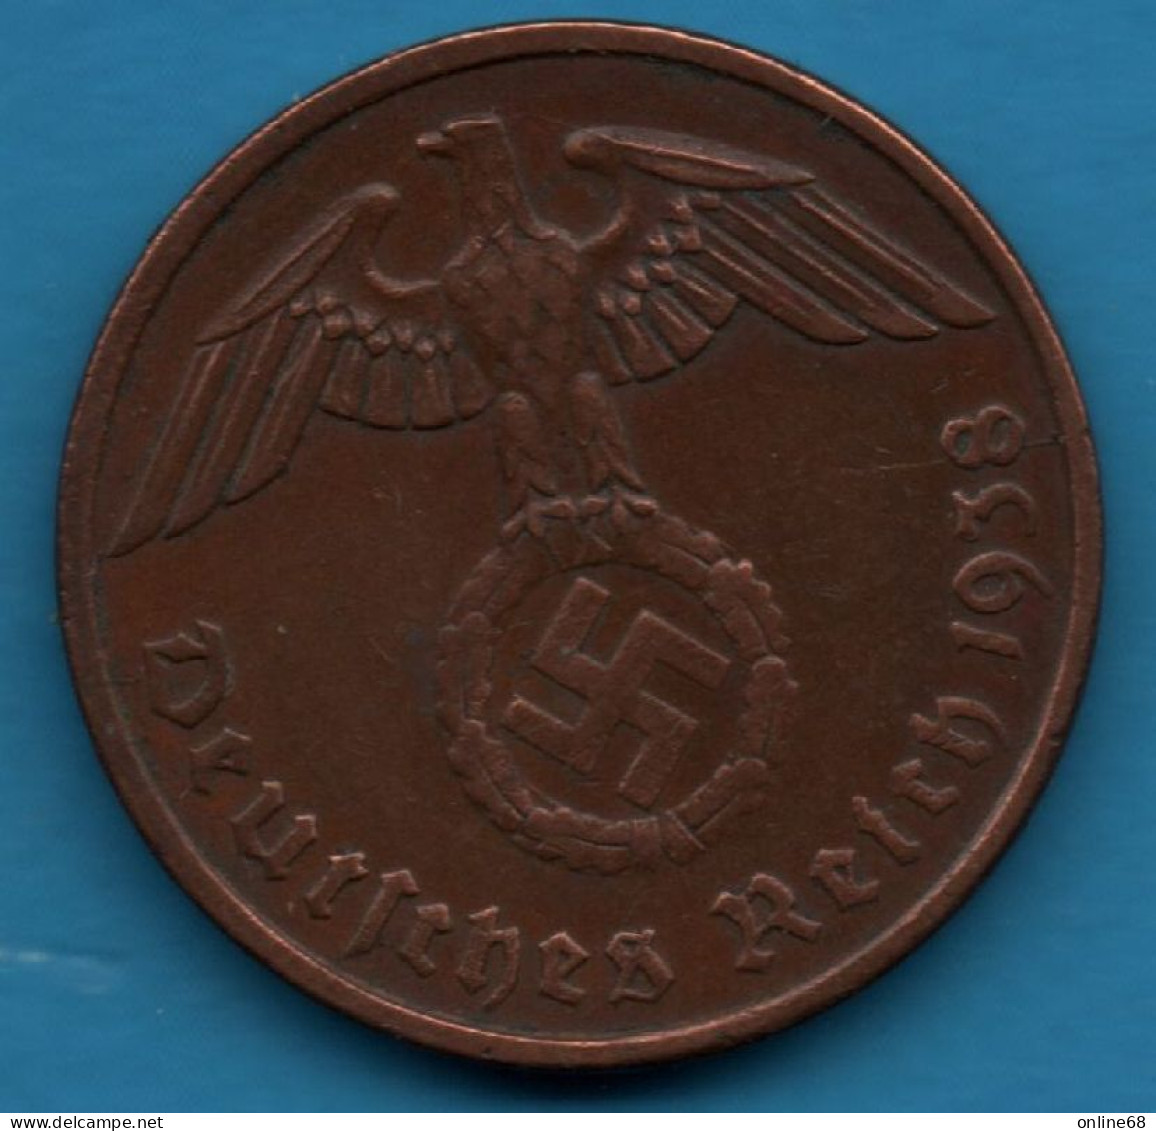 DEUTSCHES REICH 2 REICHSPFENNIG 1938 G KM# 90 Svastika - 2 Reichspfennig